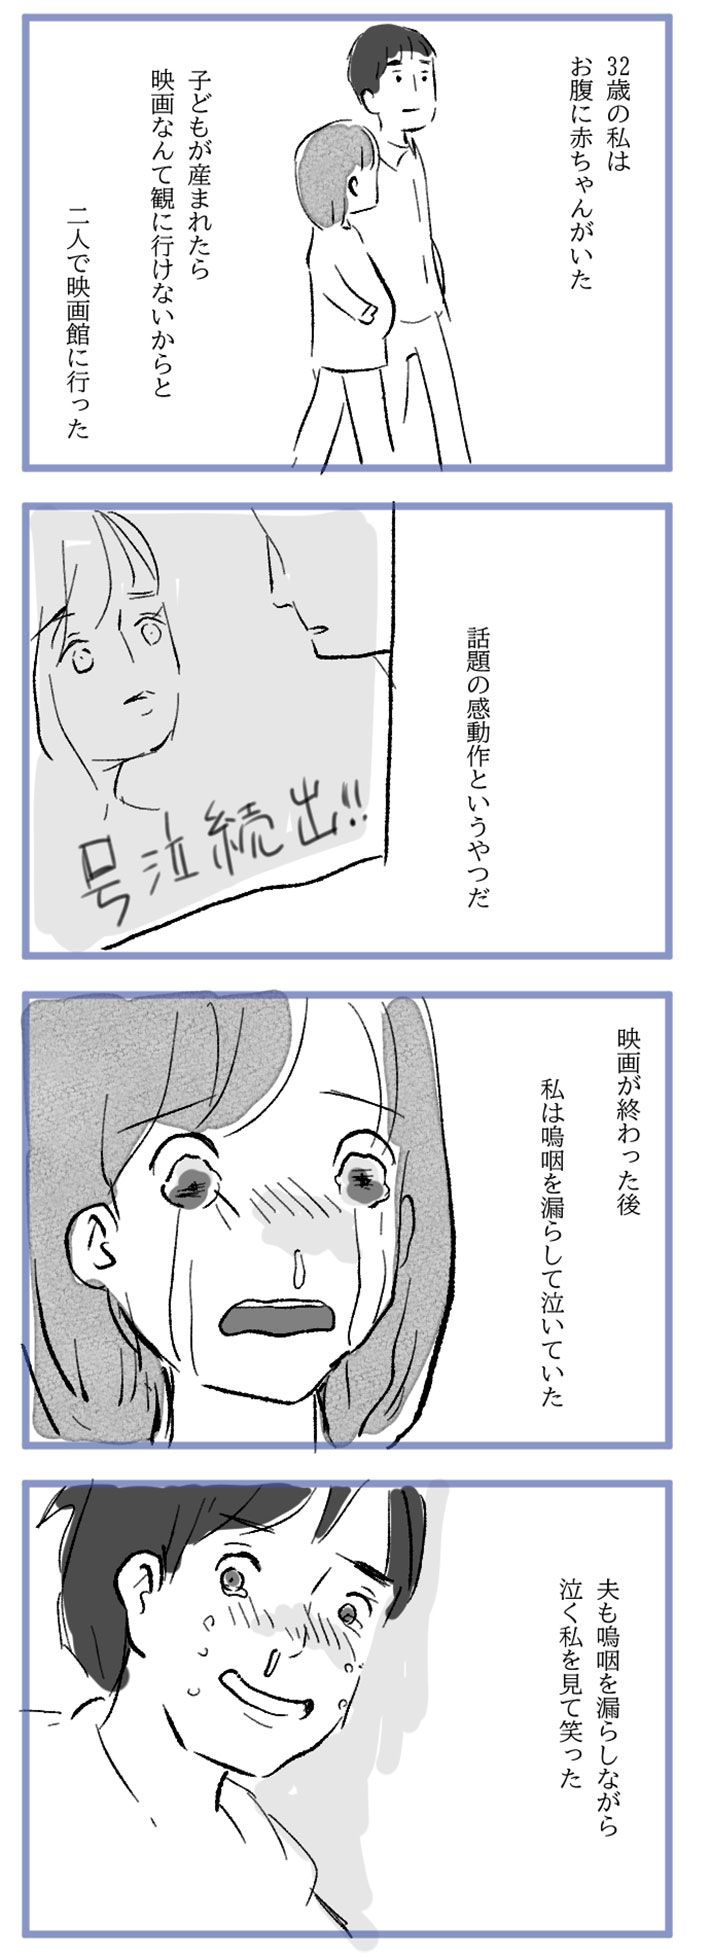 水谷アスさんの漫画作品9